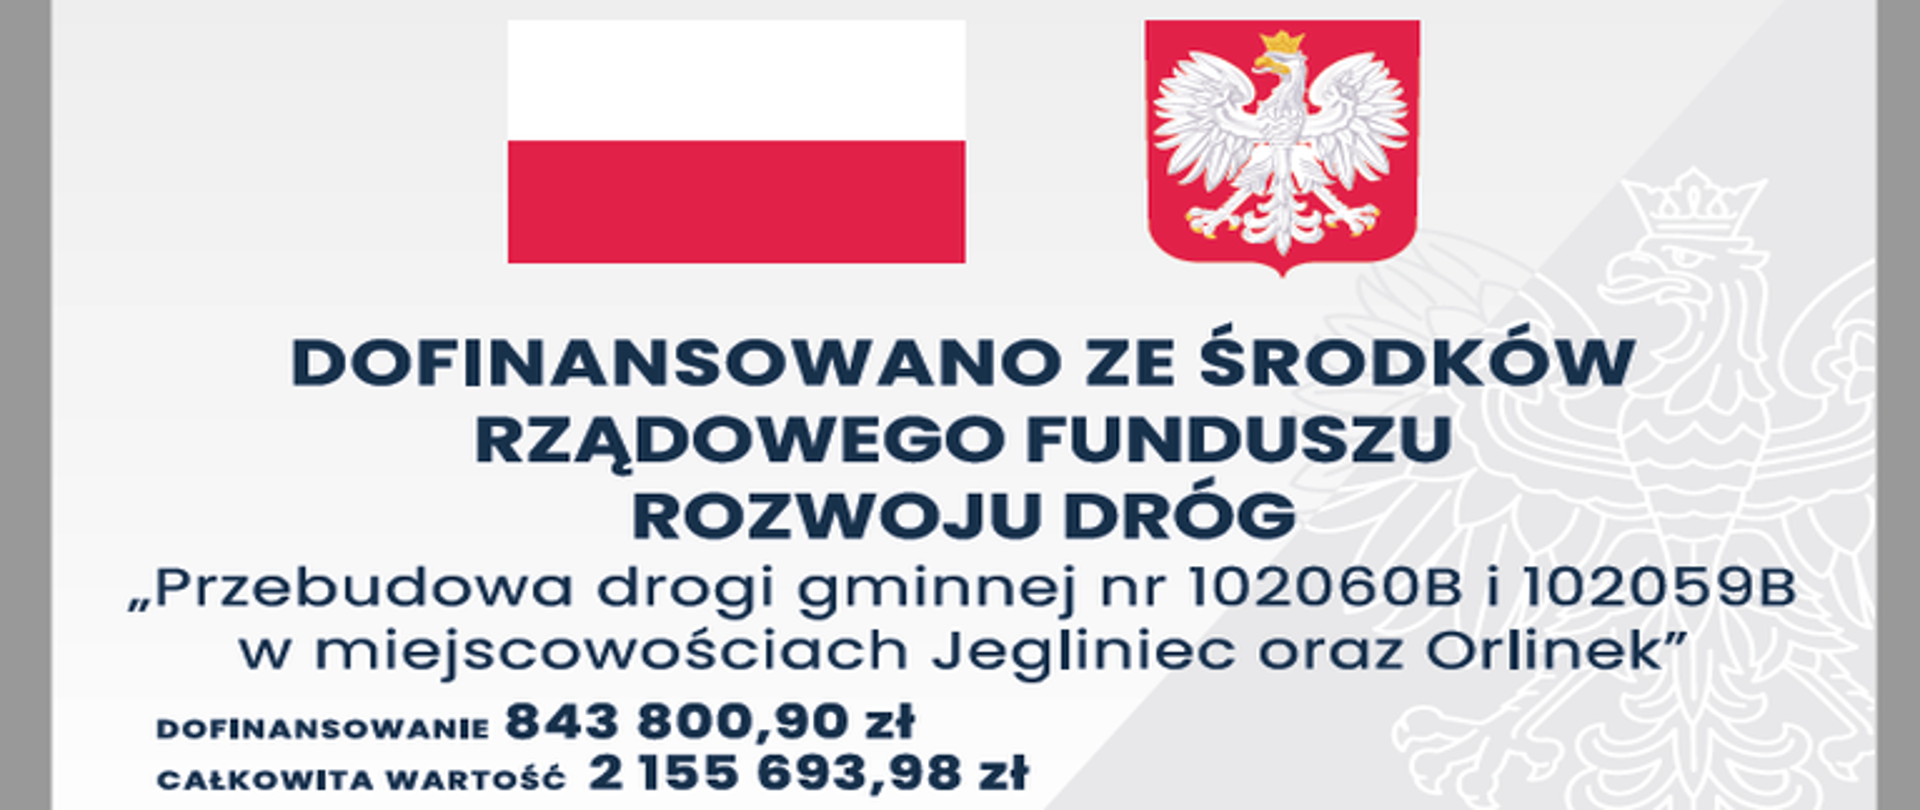 Tablica w kolorze biało-szarym, znak wodny orła, na górze po lewej stronie flaga Polski, po prawej godło, niżej napis "Dofinansowano ze środków Rządowego Rozwoju Dróg", poniżej napis: „Przebudowa drogi gminnej nr 102060B i 102059B w miejscowościach Jegliniec oraz Orlinek”